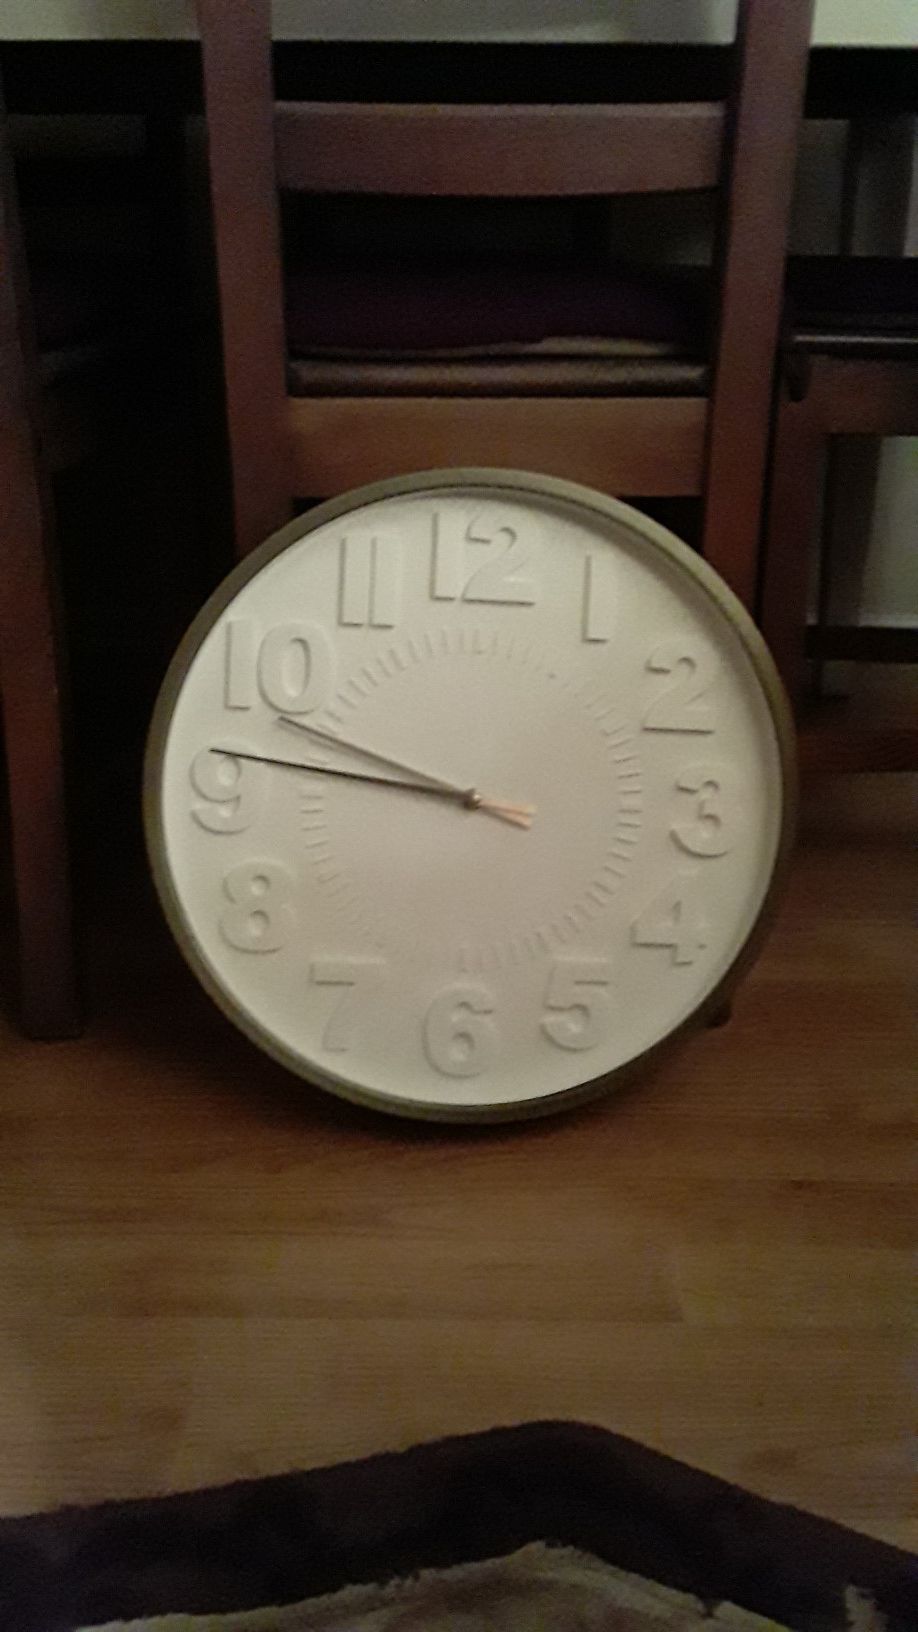 Modern clock